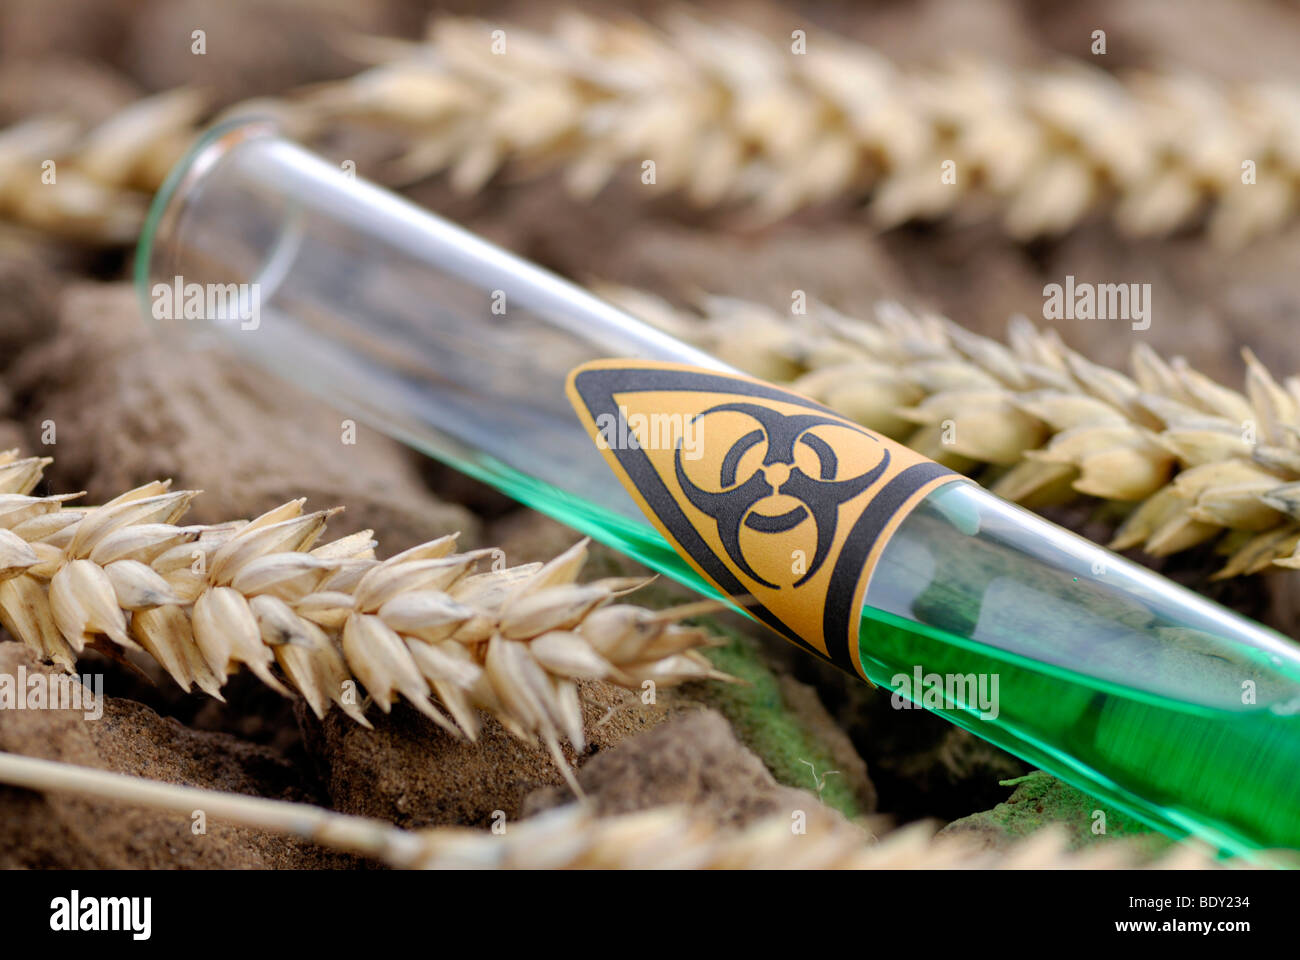 Tubo de ensayo con señal de peligro biológico y espigas de trigo, trigo genéticamente manipulado Foto de stock